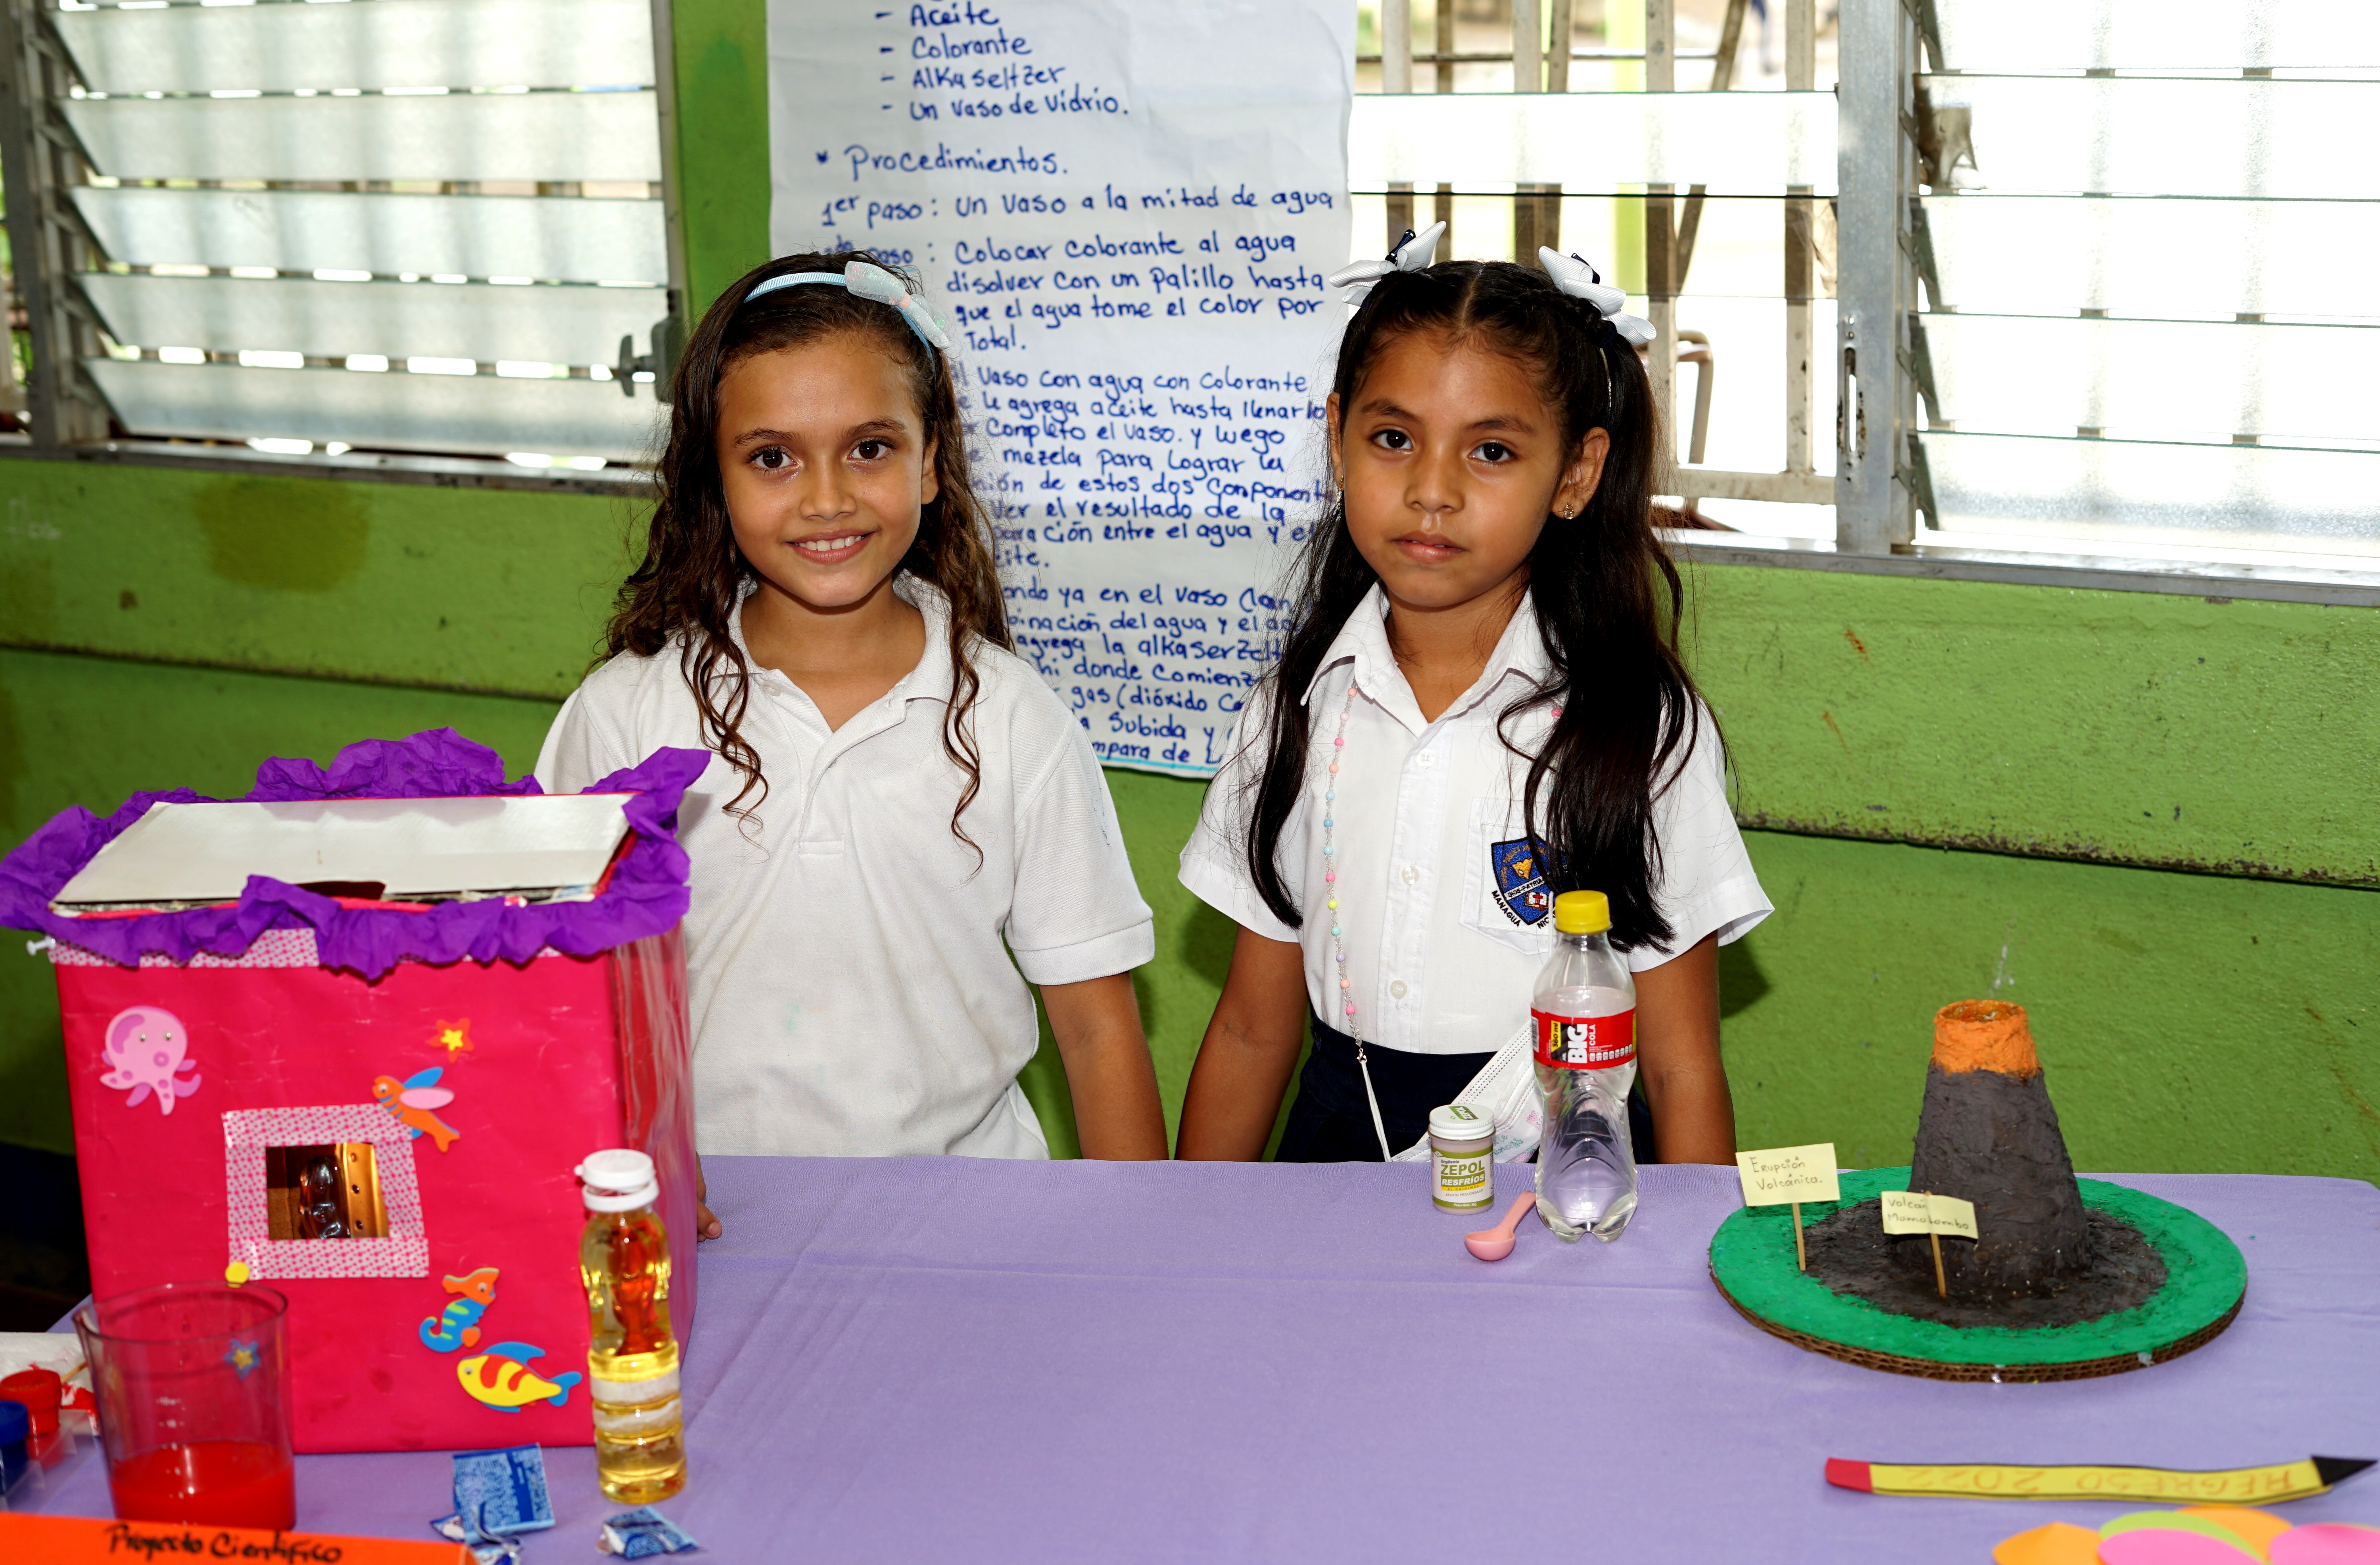 Estudiantes presentan interesantes experimentos en Feria “Mis pequeños científicos”